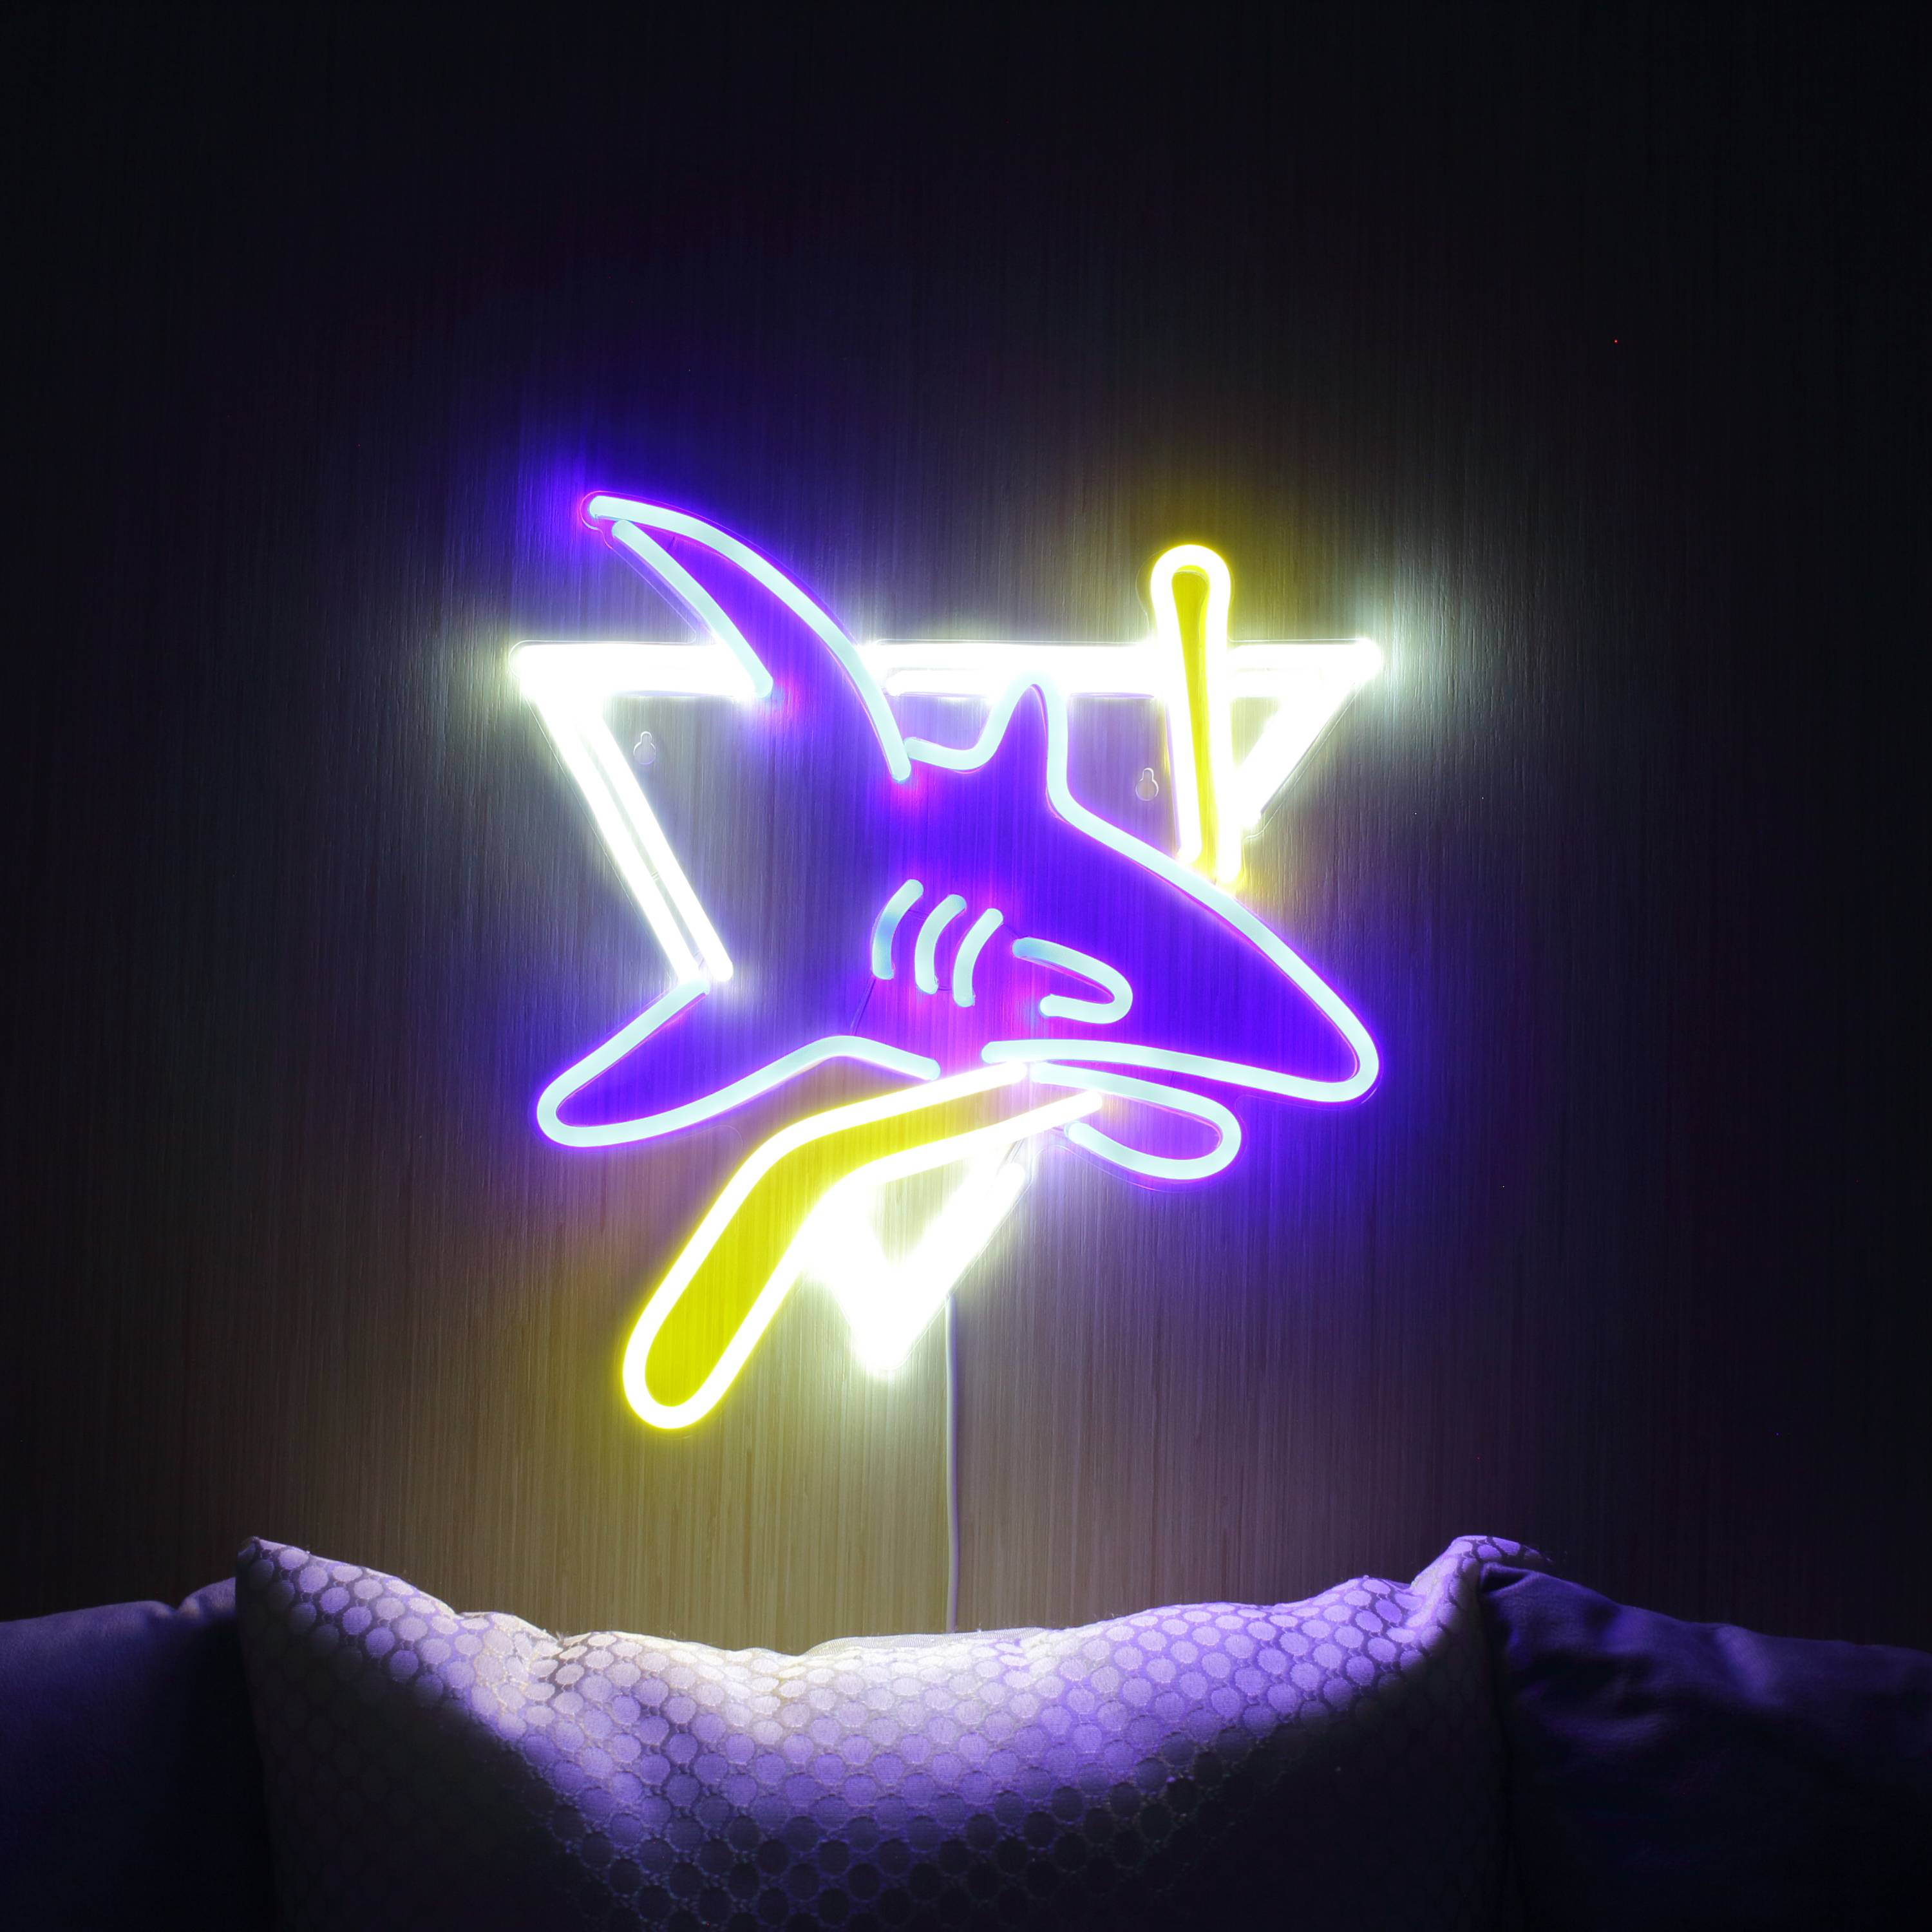 NHL San Jose Sharks Large Flex Neon LED Sign